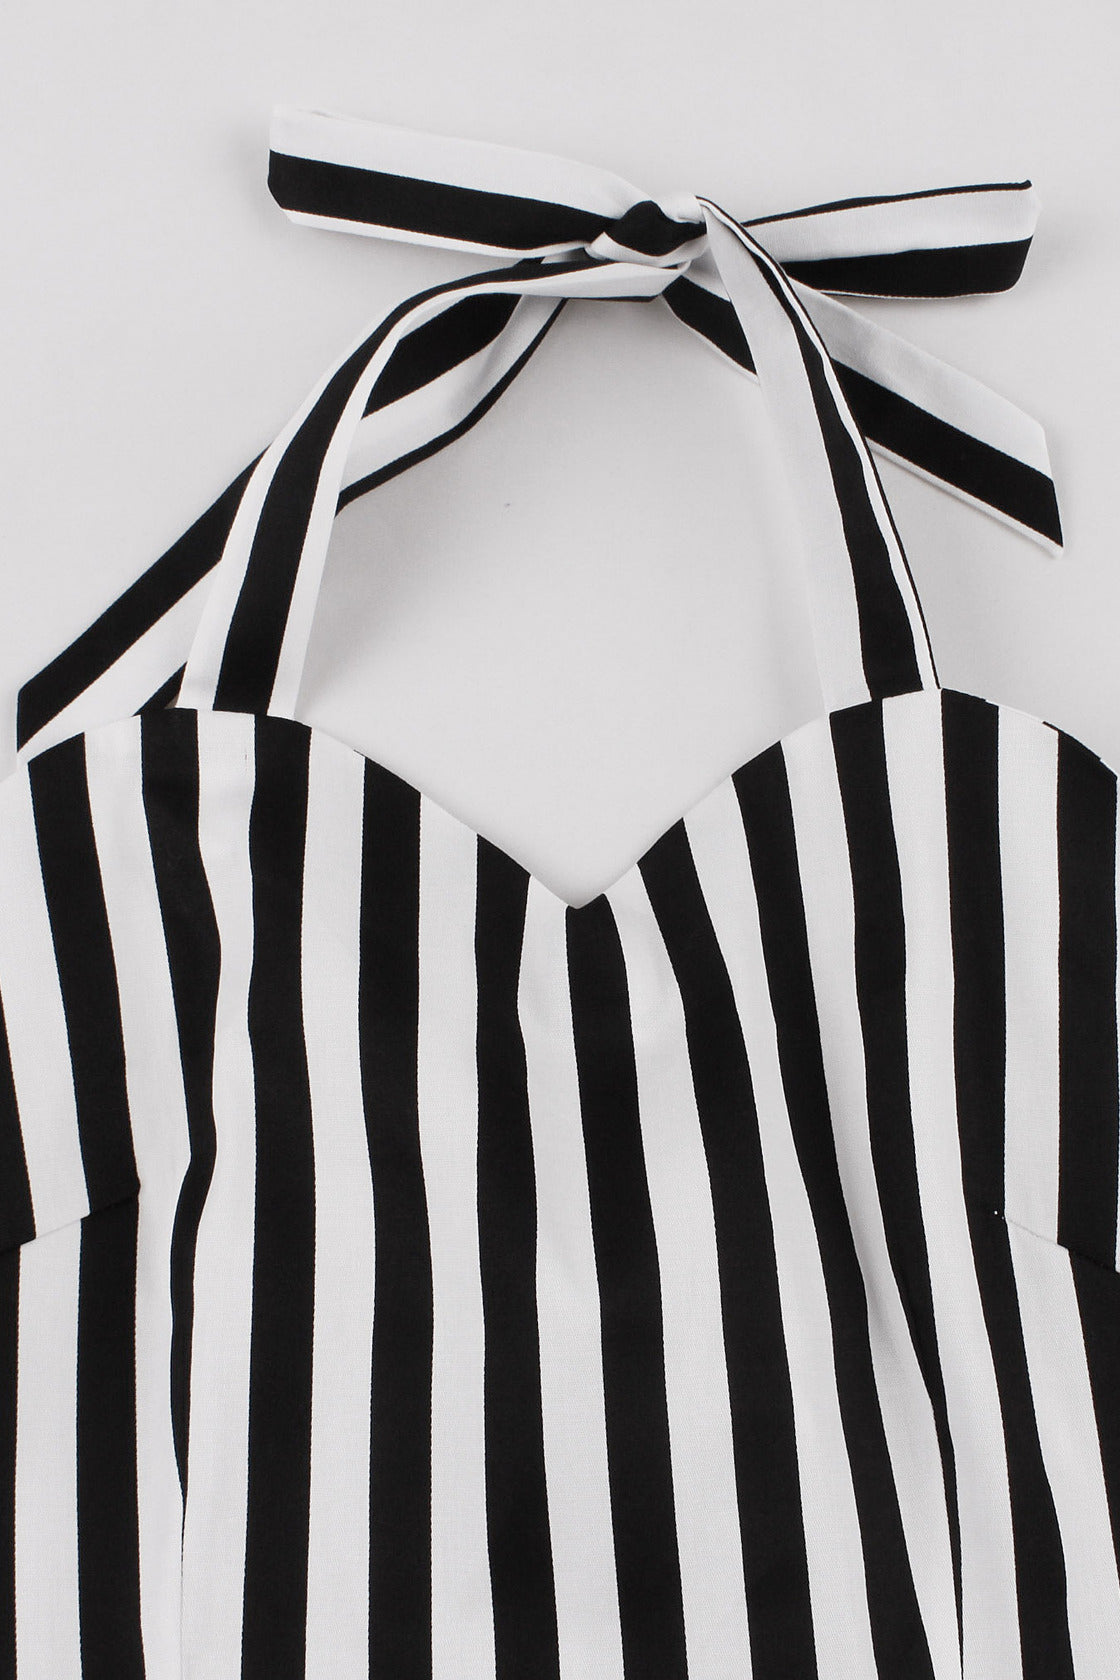 Black and White Stripes Halter A-line Vintage Dress